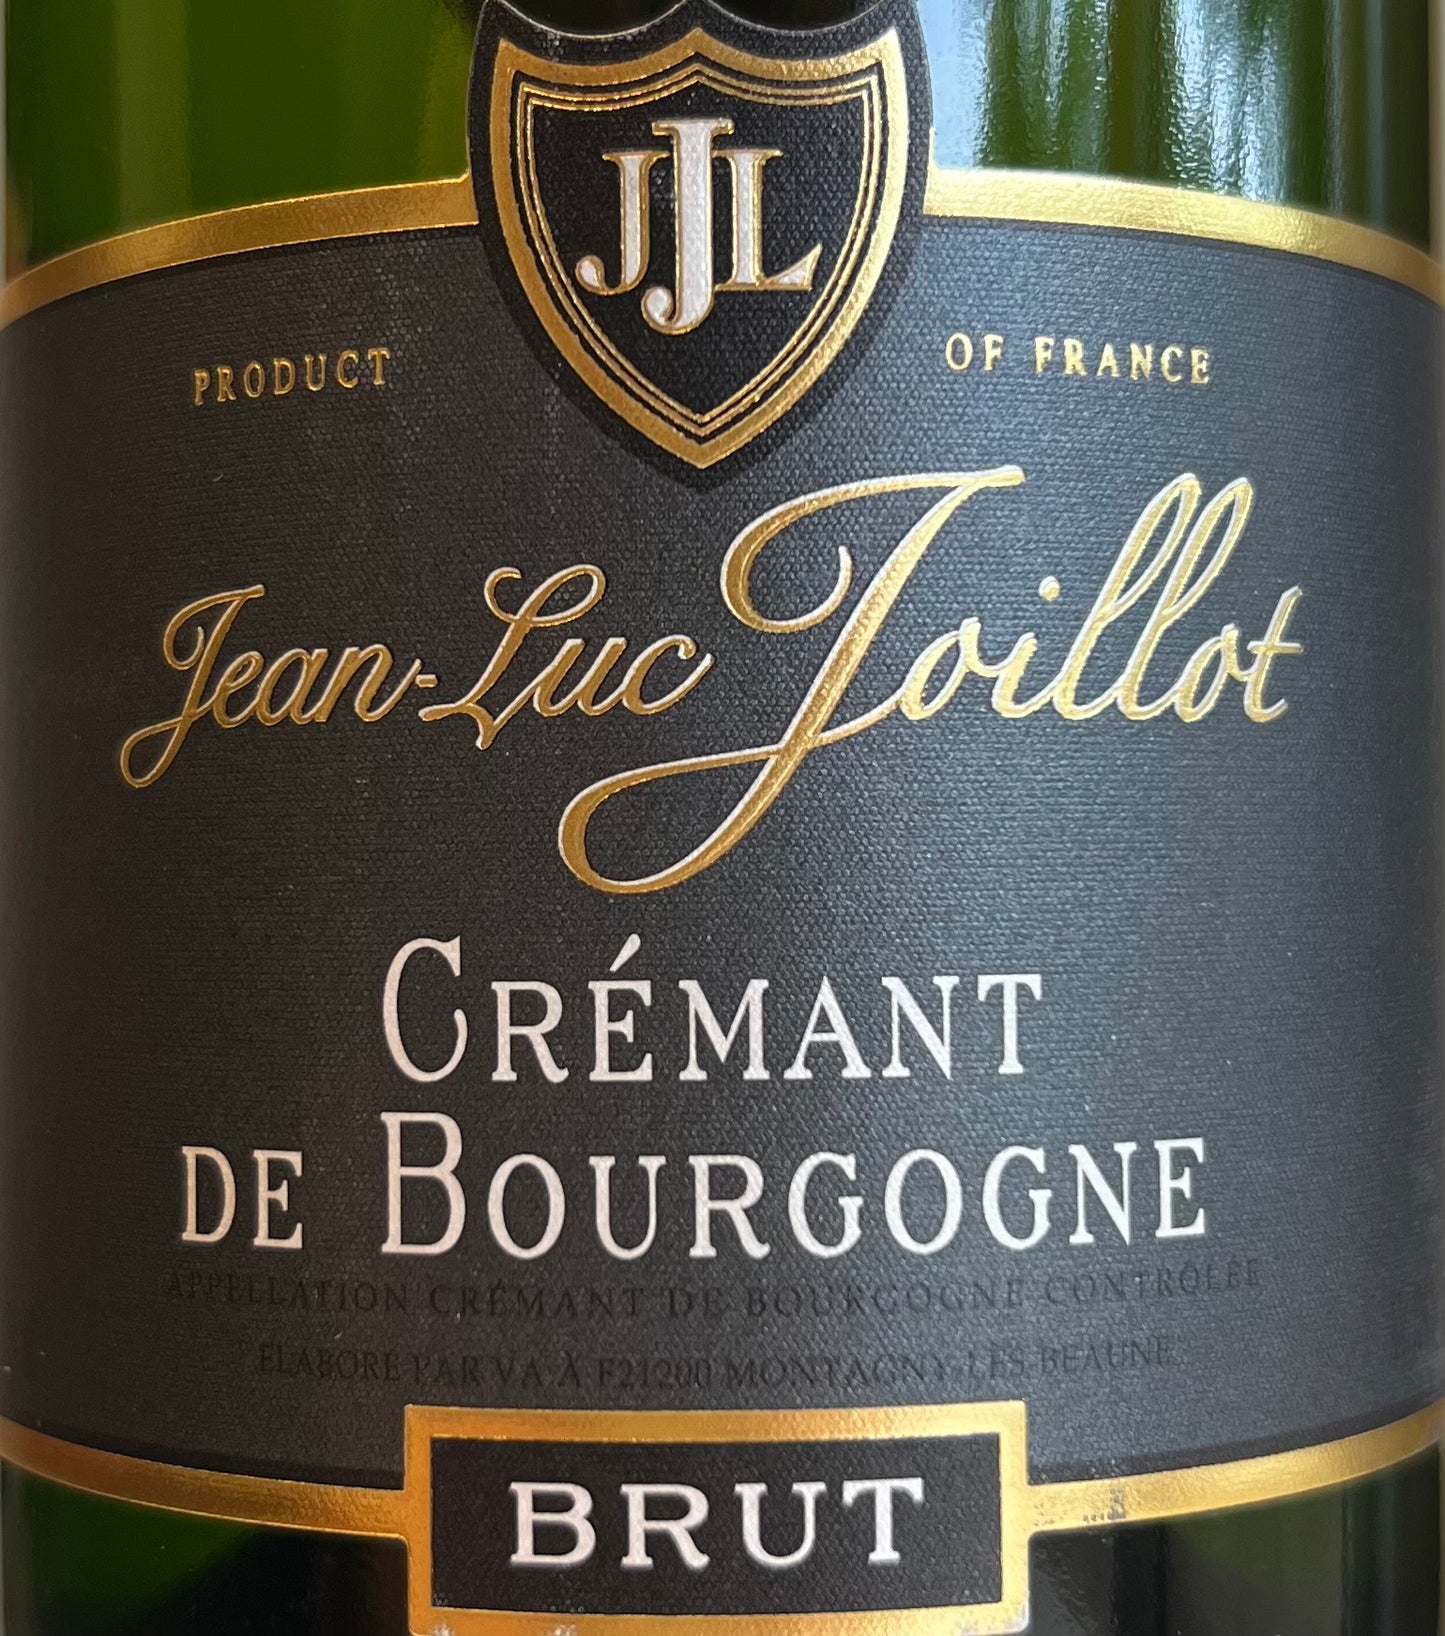 Jean-Luc Joillot - Cremant de Bourgogne